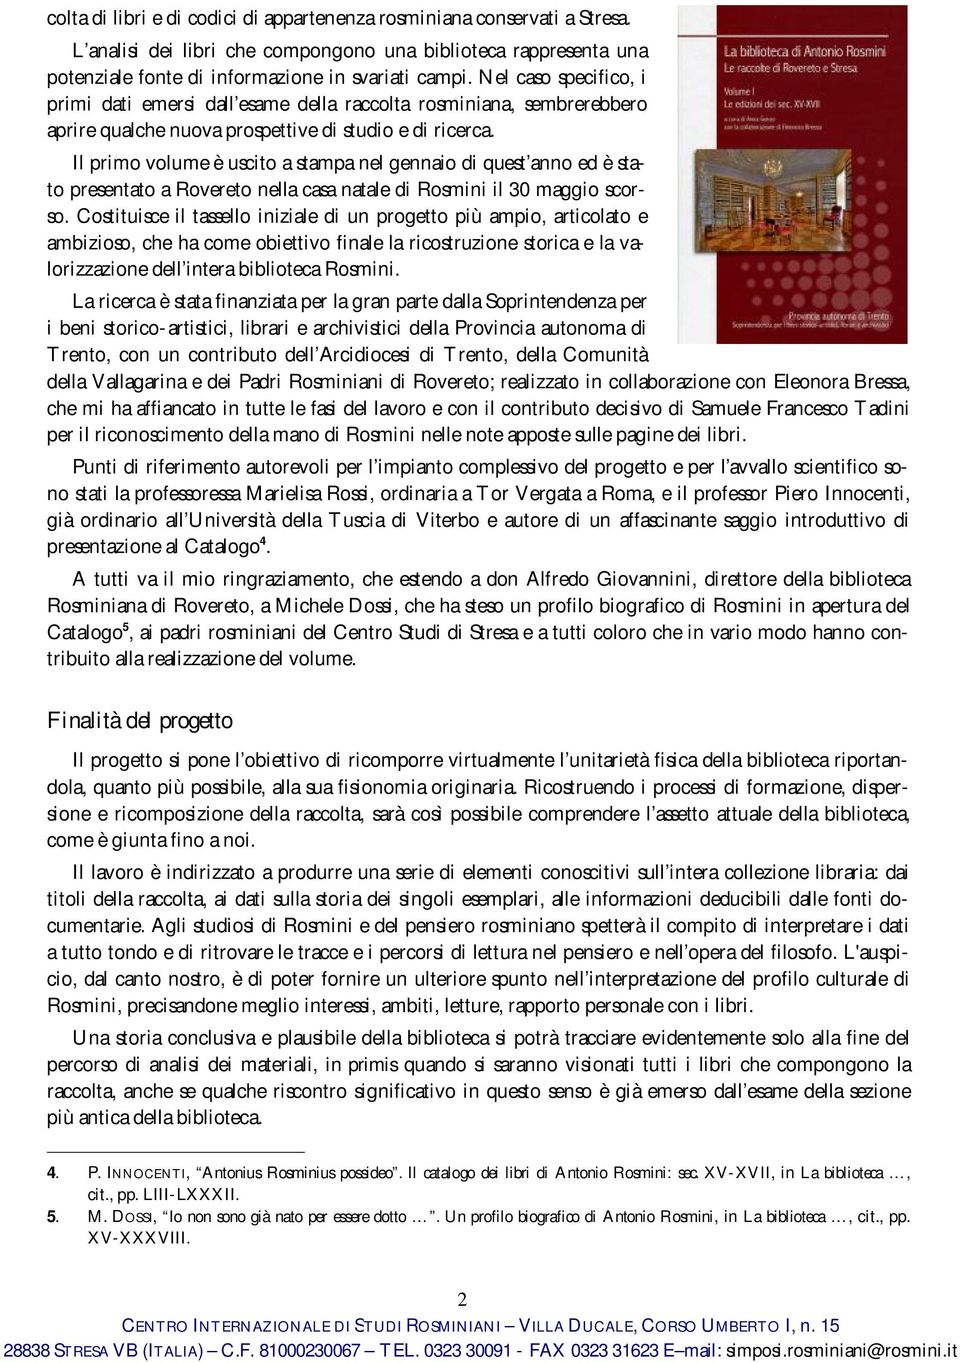 Il primo volume è uscito a stampa nel gennaio di quest anno ed è stato presentato a Rovereto nella casa natale di Rosmini il 30 maggio scorso.